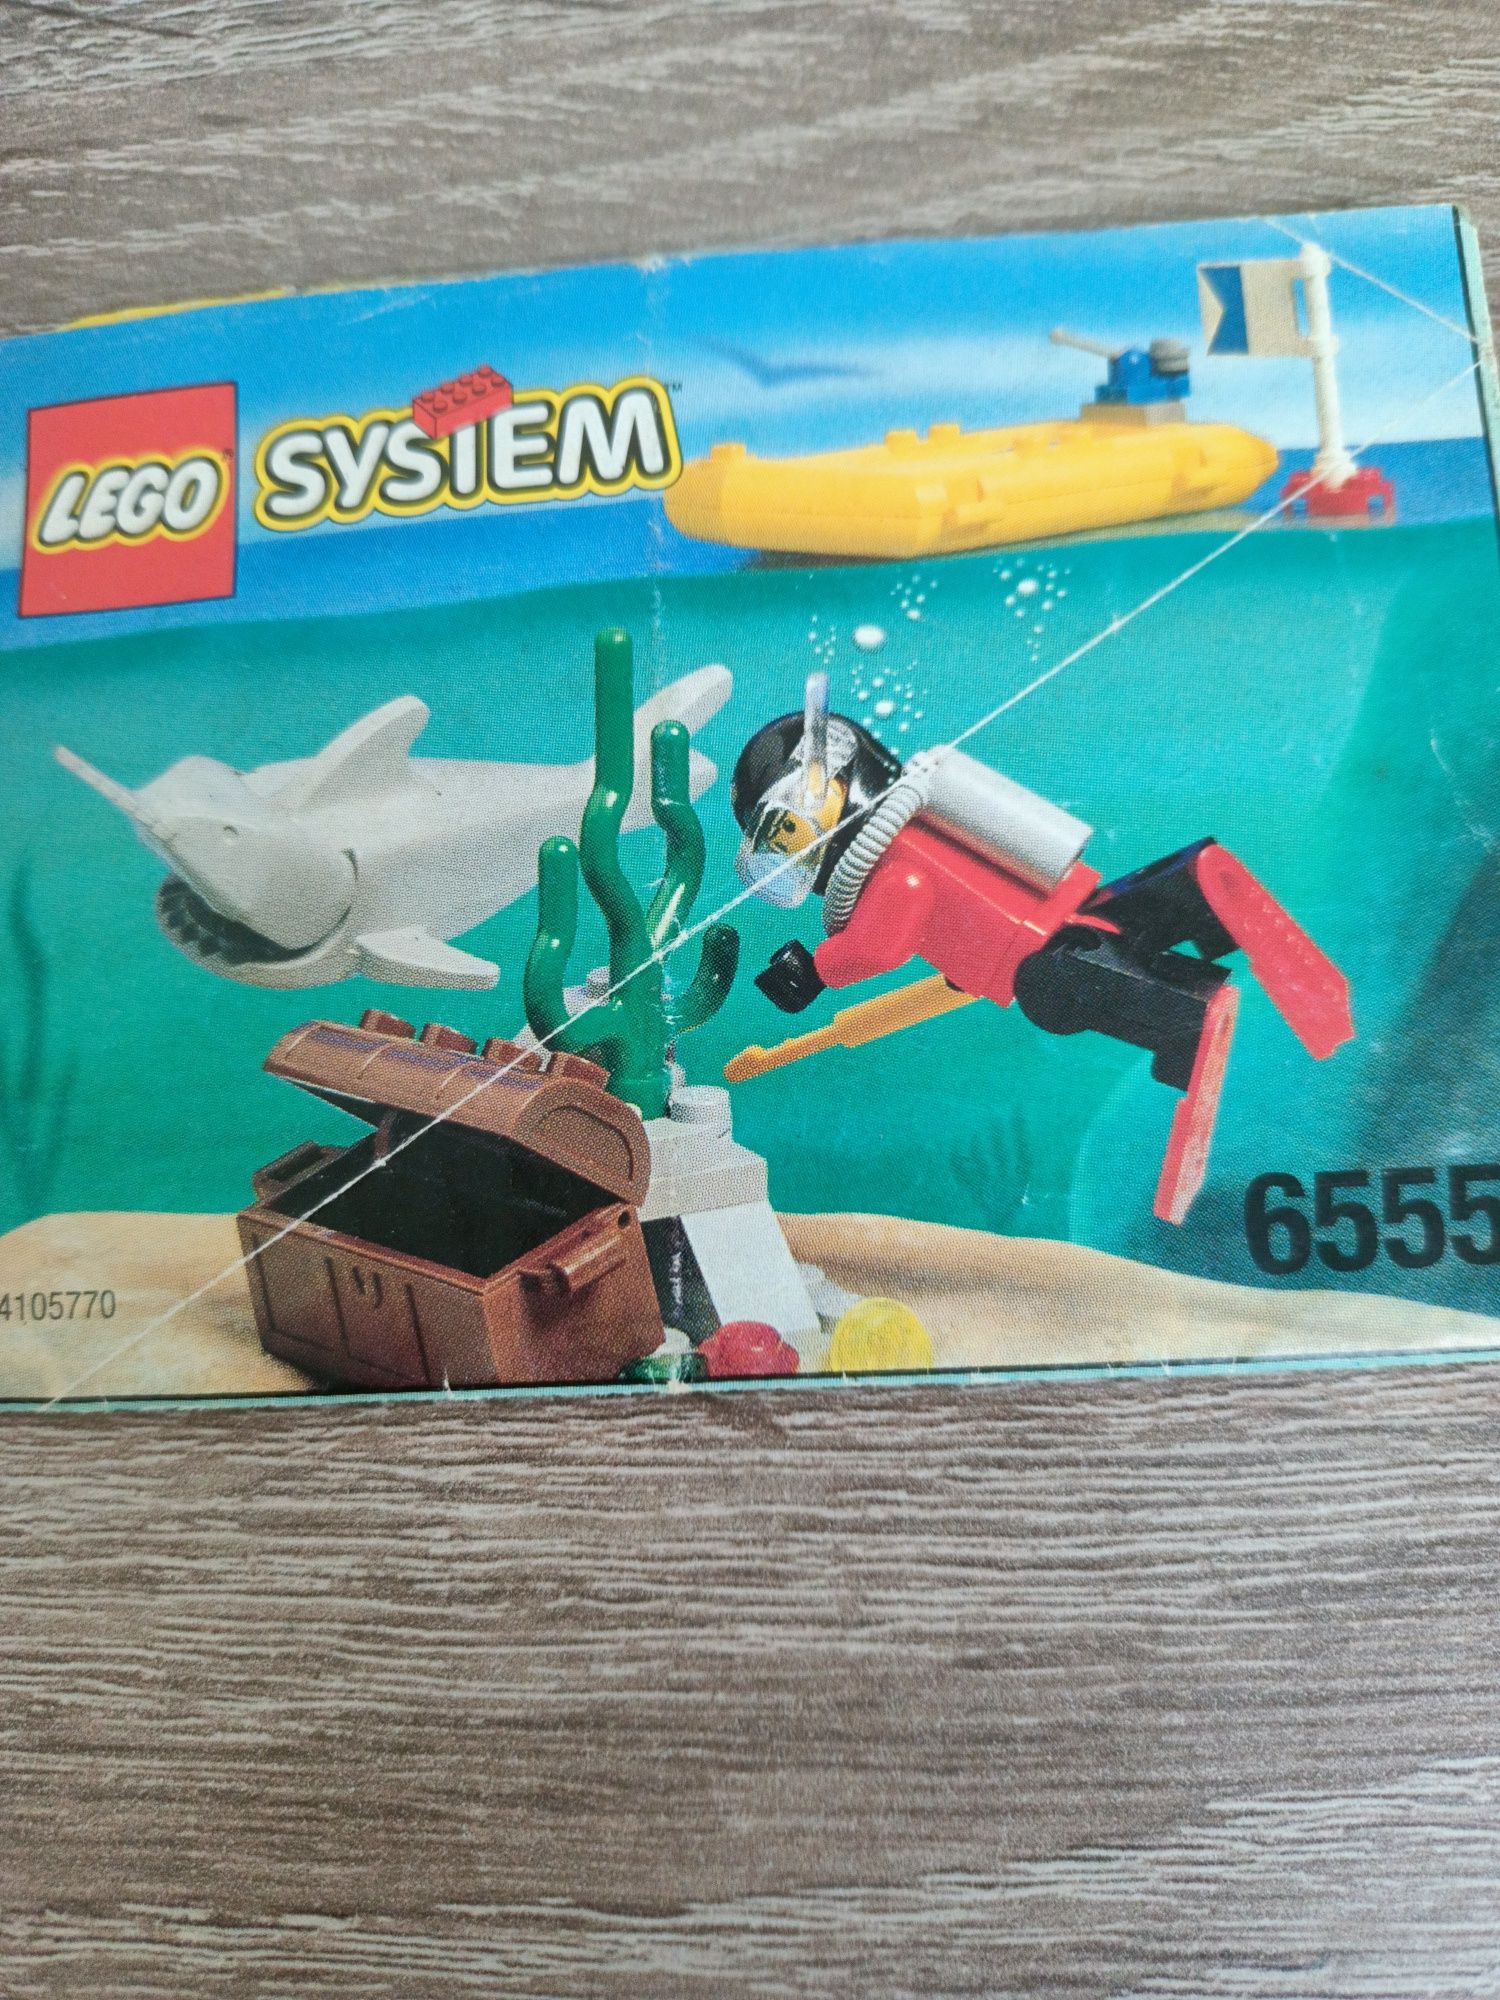 Lego System 6555